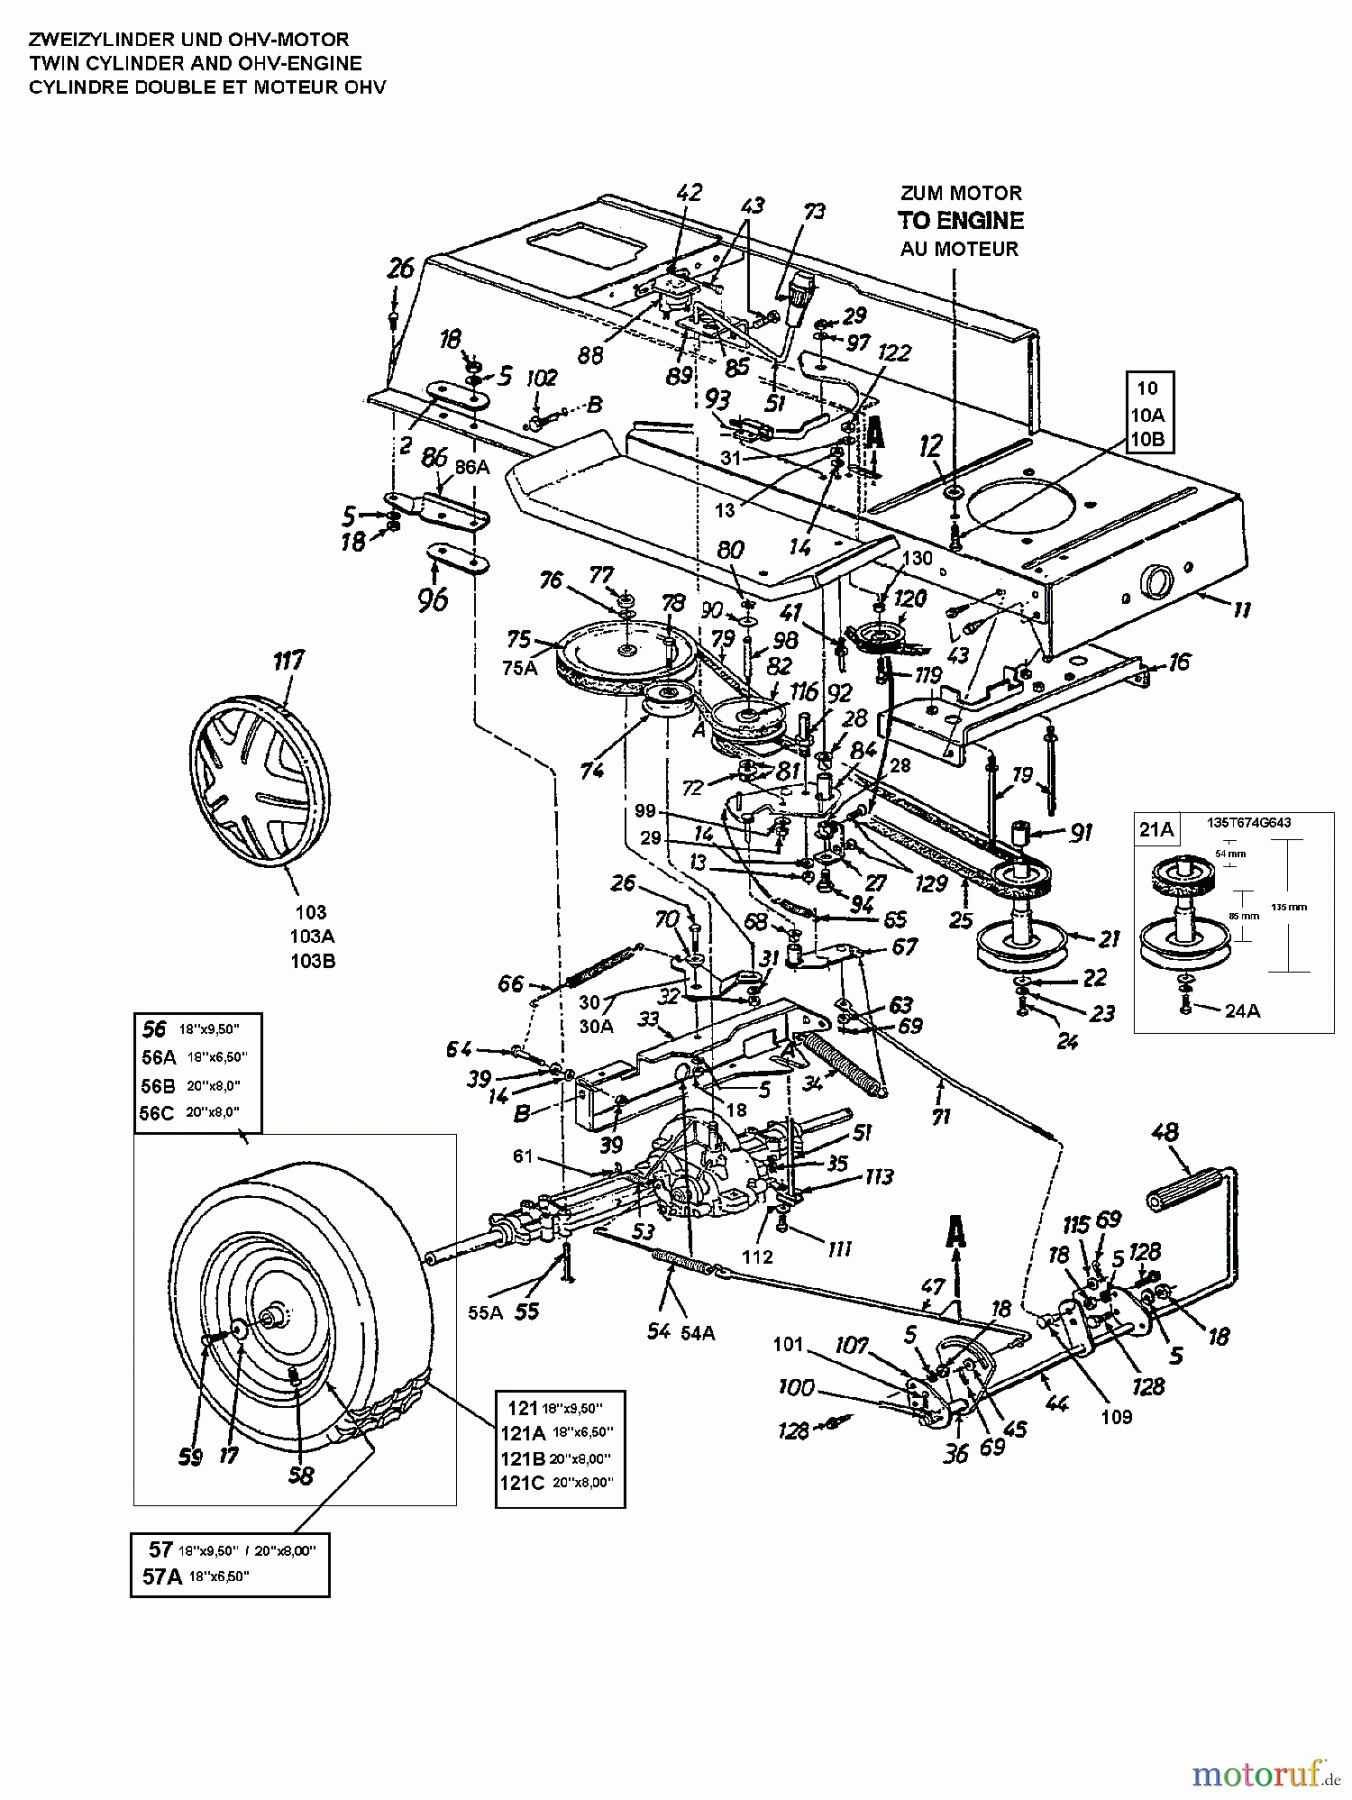  Columbia Rasentraktoren 125/76 N 135L661C626  (1995) Fahrantrieb, Motorkeilriemenscheibe, Pedal, Räder hinten